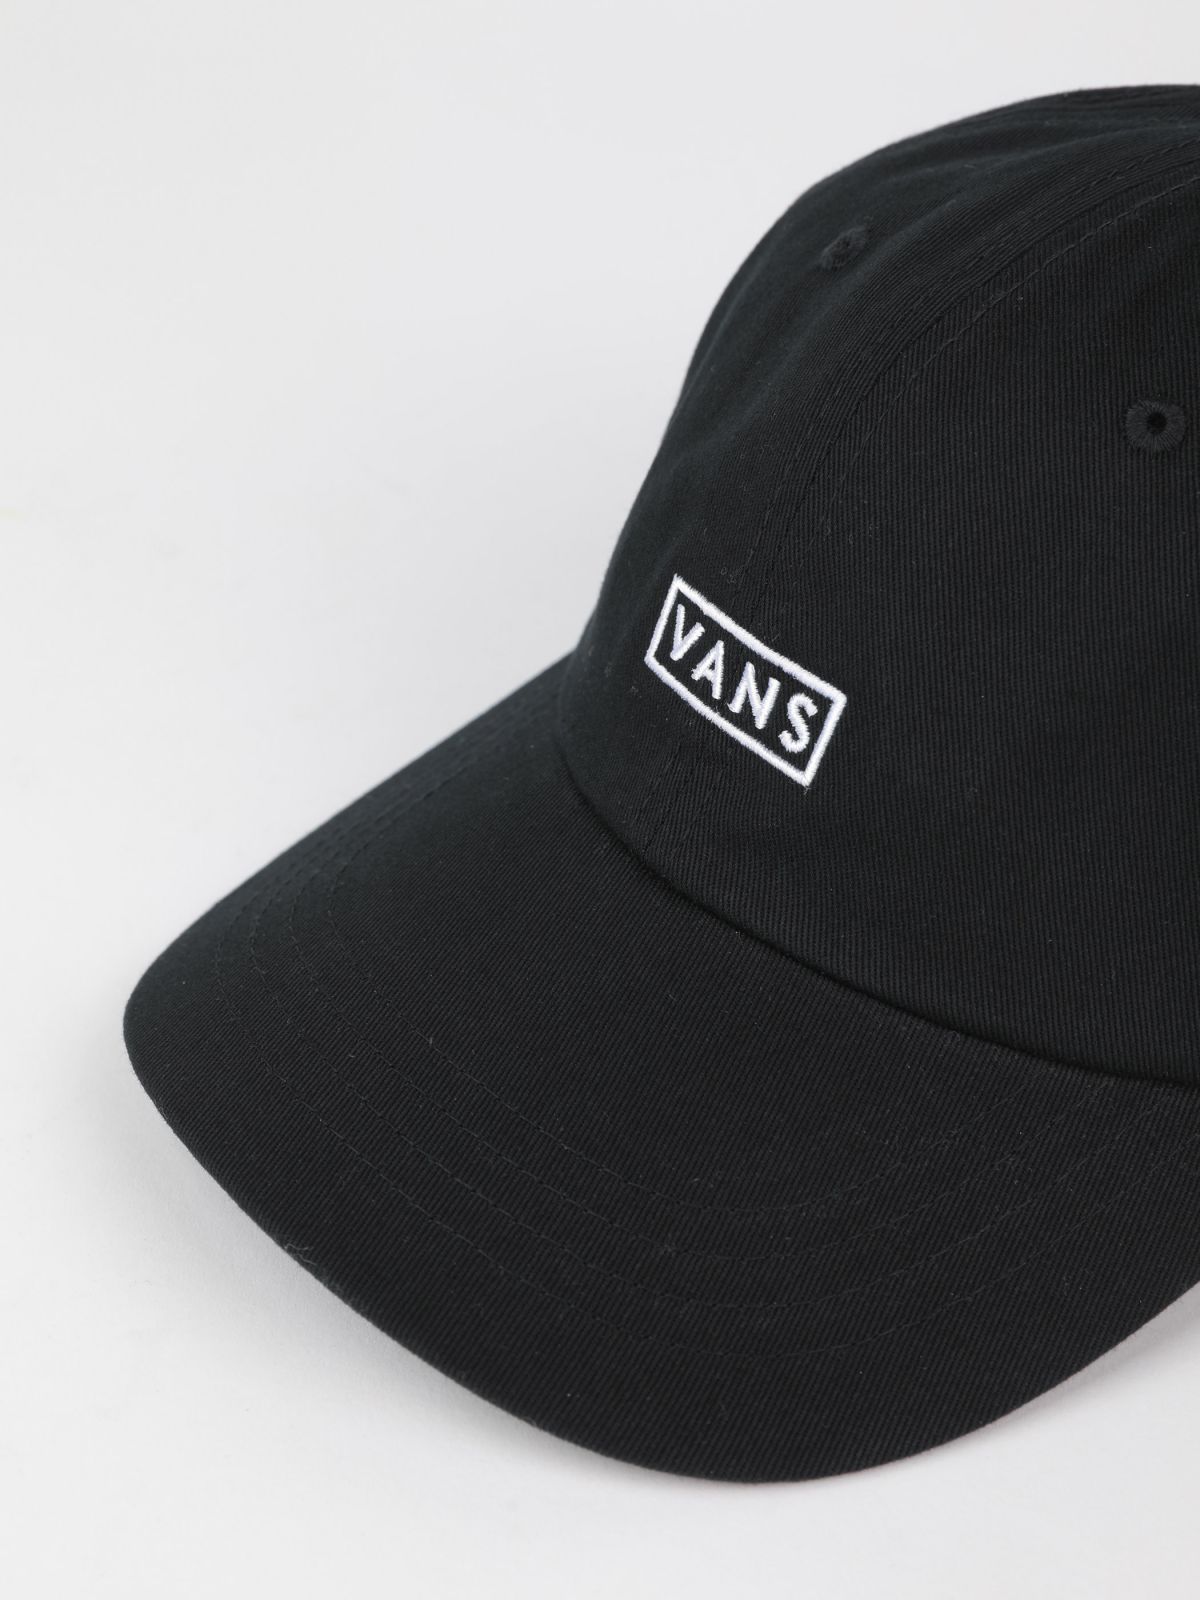  כובע מצחייה עם לוגו / גברים של VANS